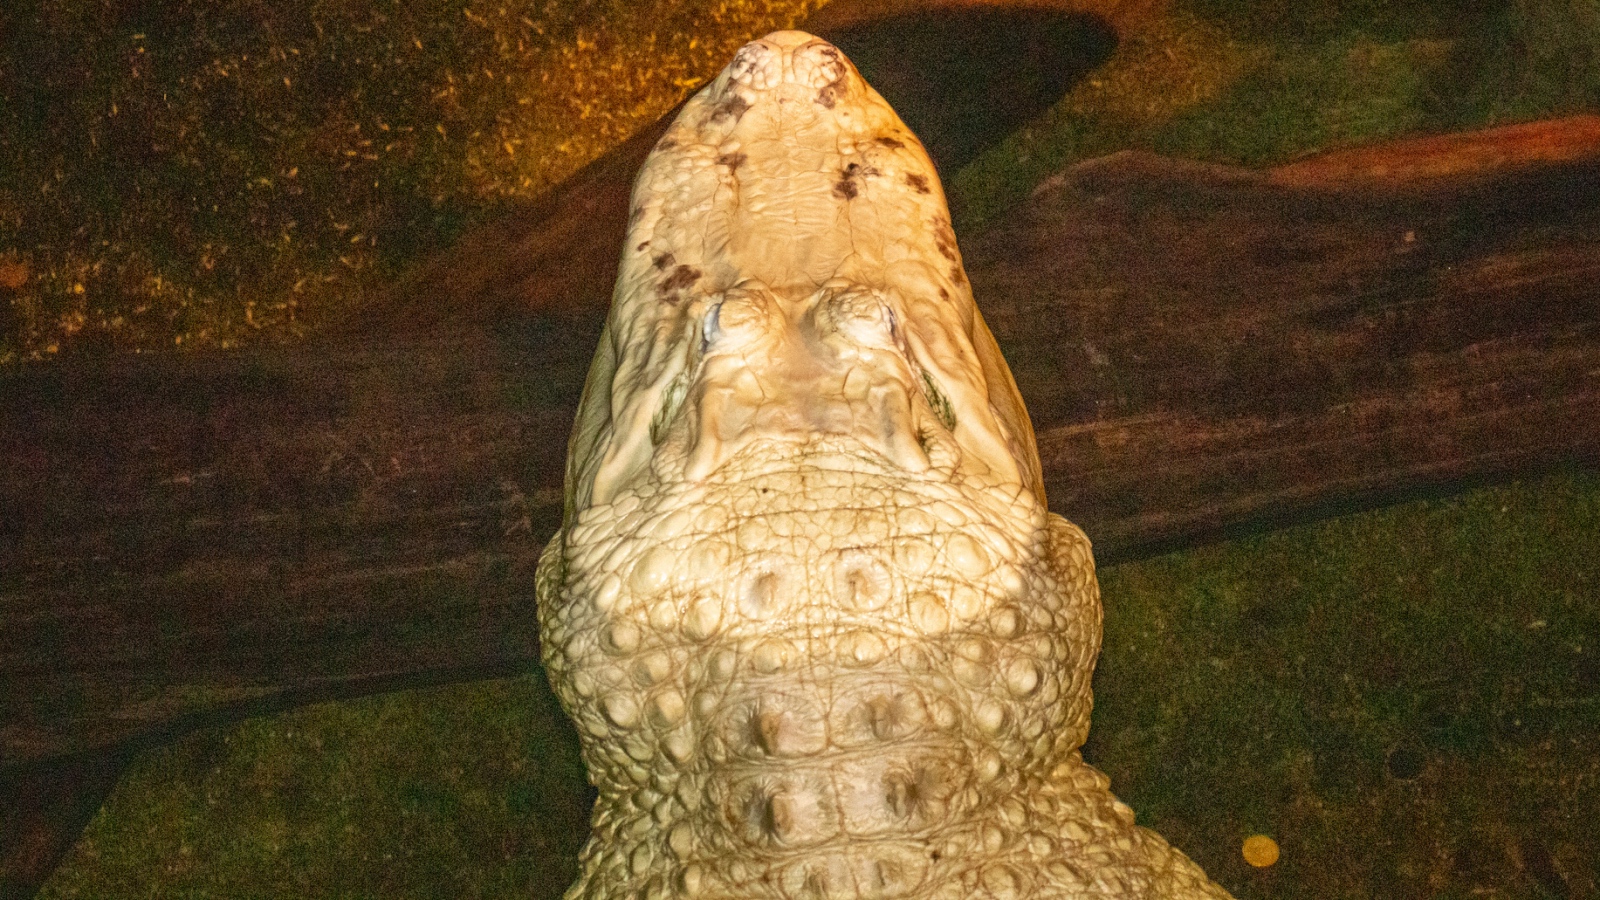 rare leucistic alligator in Omaha 